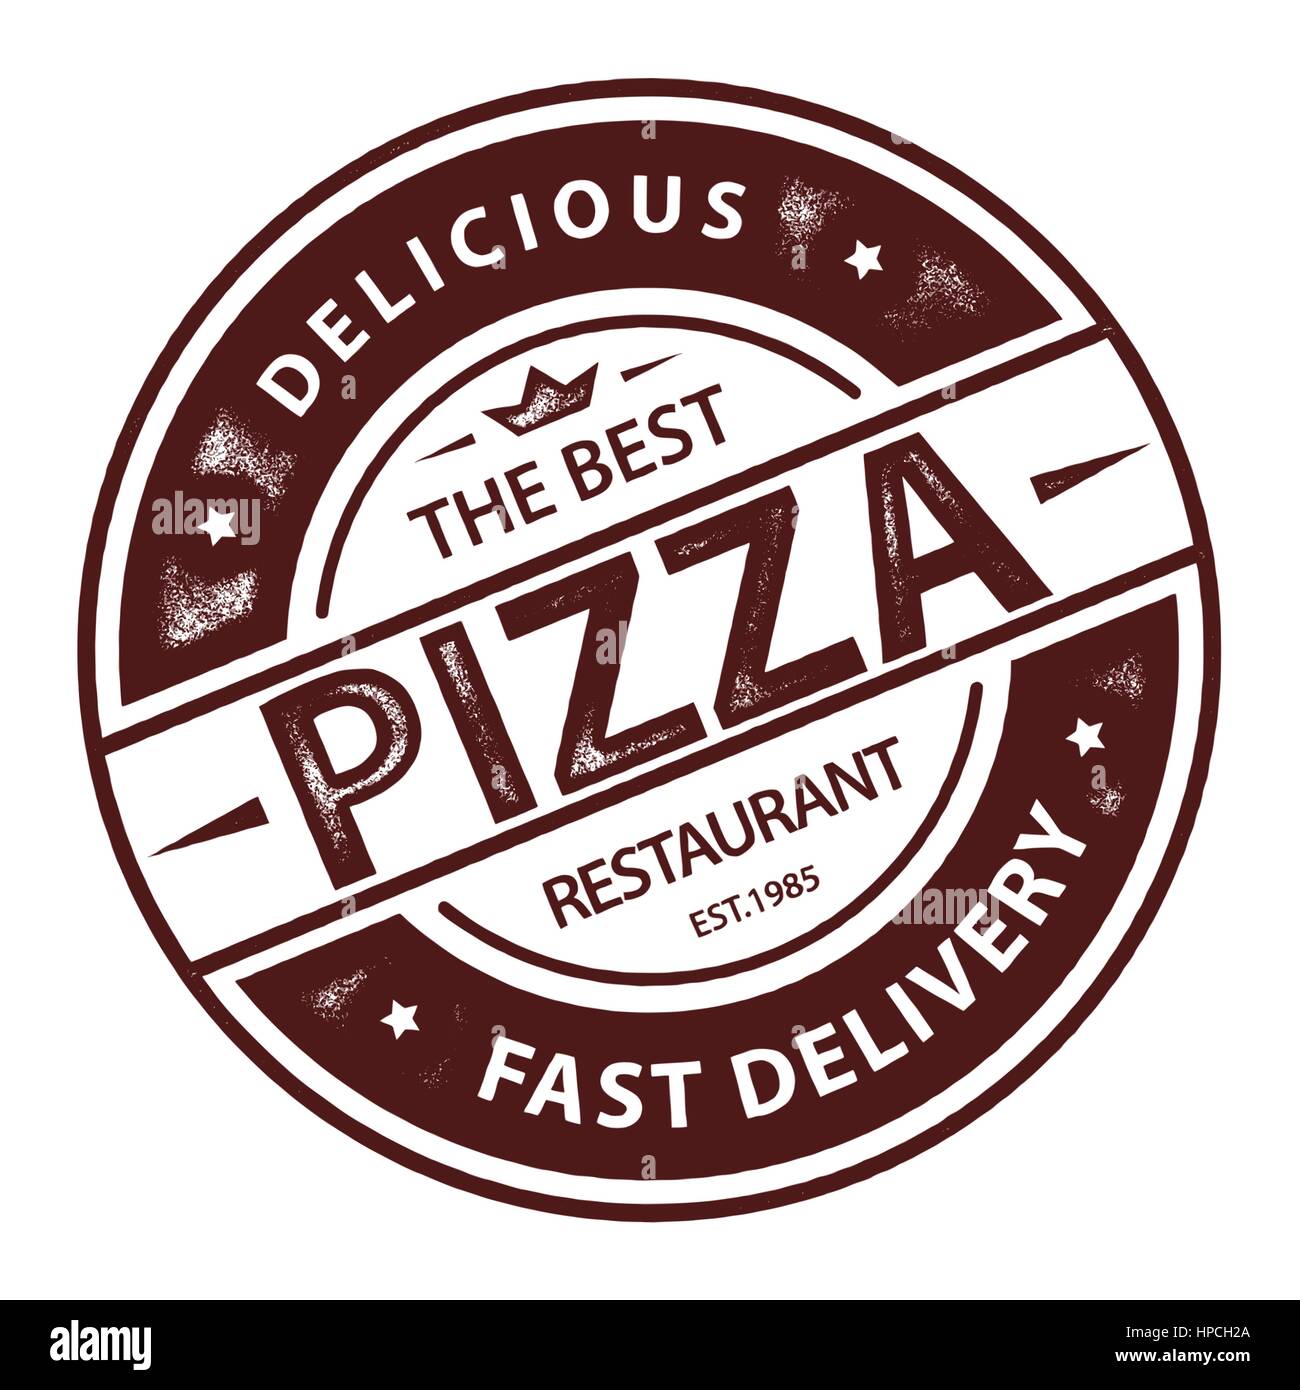 Vintage Vektor-Pizza-Logo, Label Stempel isoliert auf weißem Hintergrund Stock Vektor